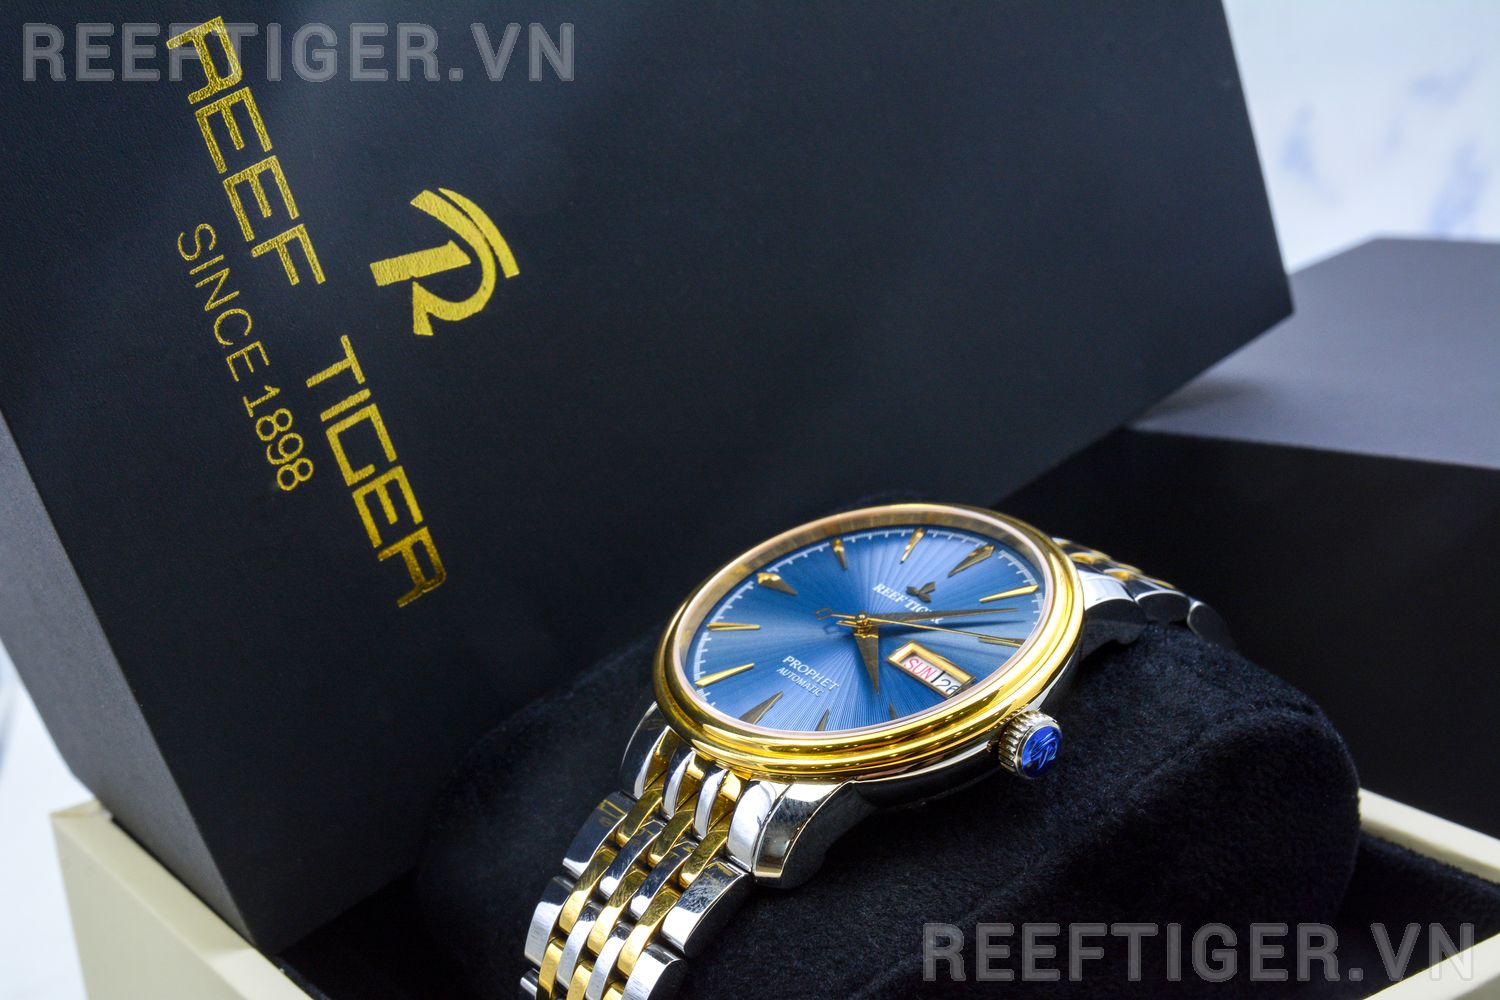 Đồng hồ Reef Tiger RGA8236-GLT